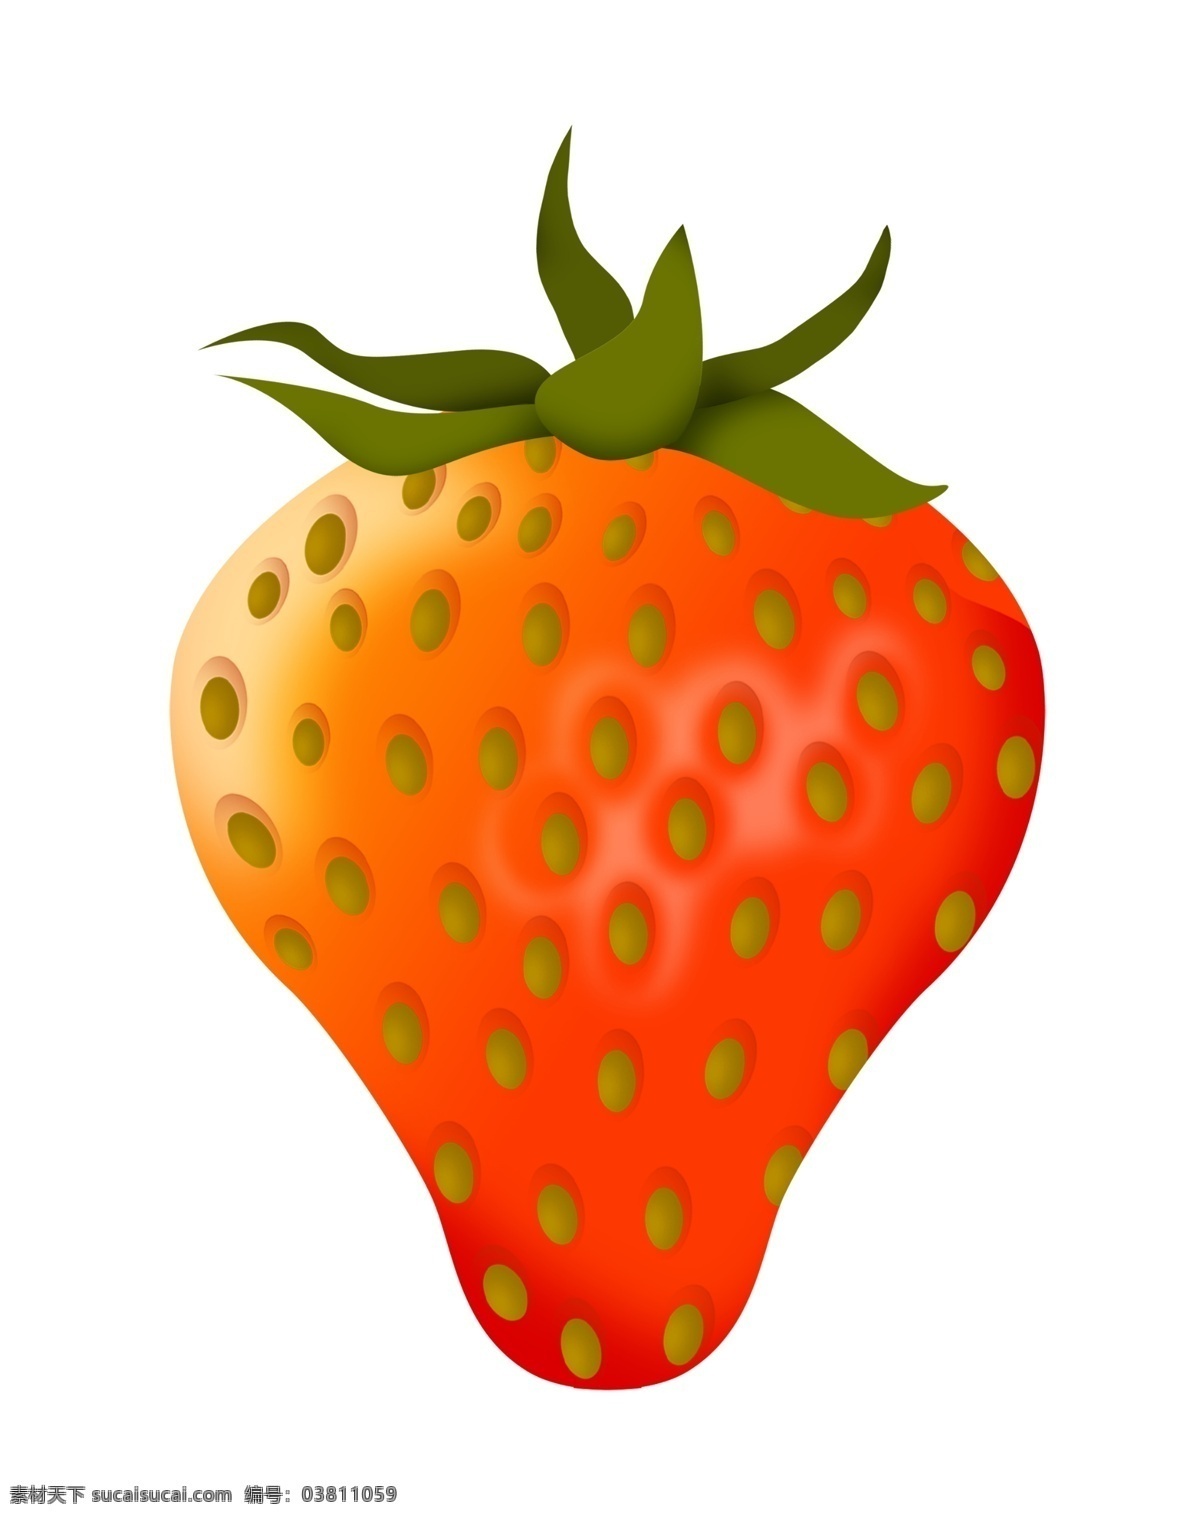 大个 草莓 手绘 插画 大个草莓 漂亮的草莓 手绘草莓 卡通草莓 好吃的草莓 水果草莓 新鲜的草莓